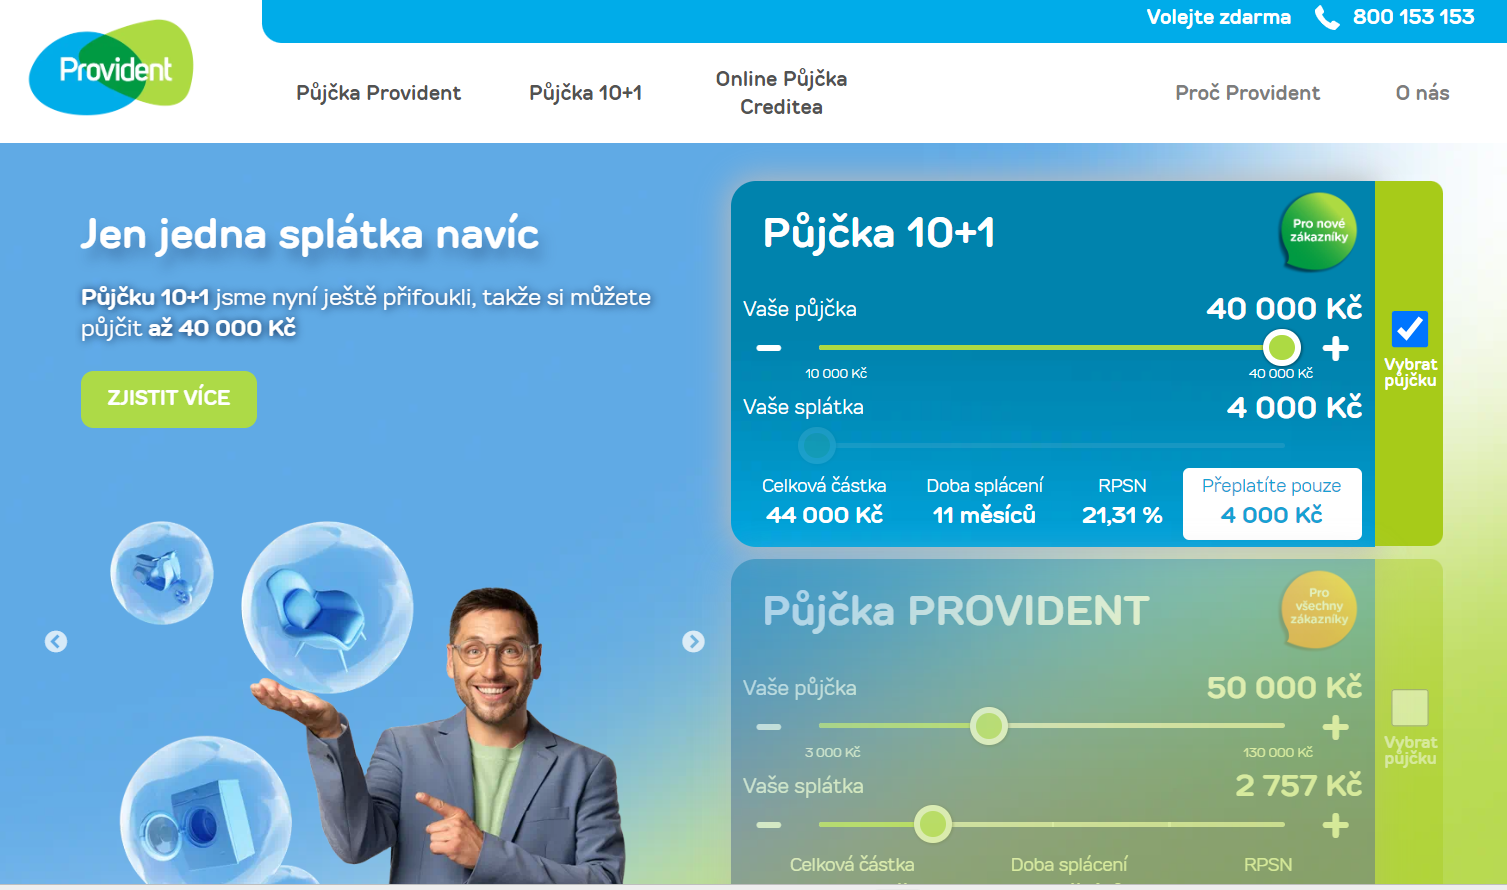 Provident - Žádost o půjčku, screen obrazovky společnosti Provident